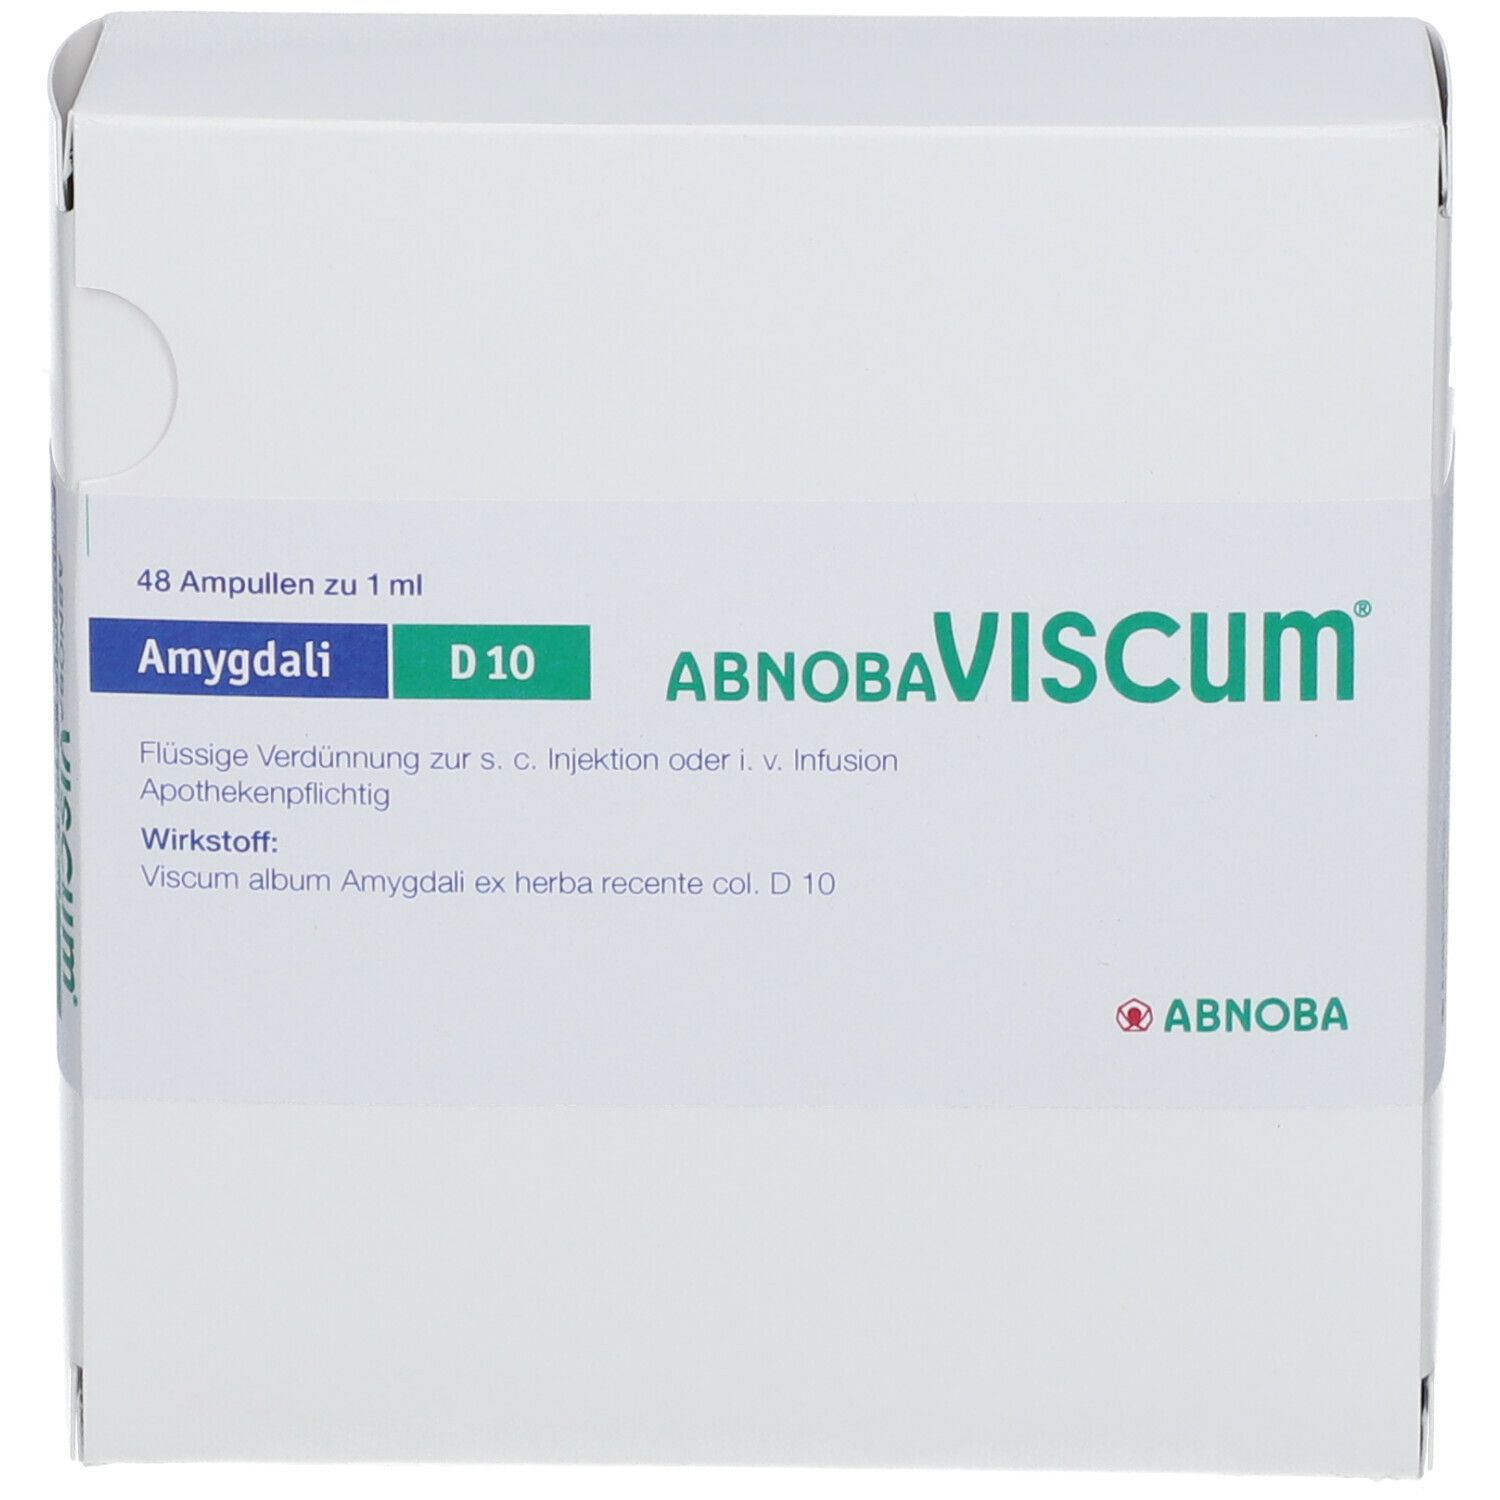 AbnobaVISCUM® Amygdali D10 Ampullen